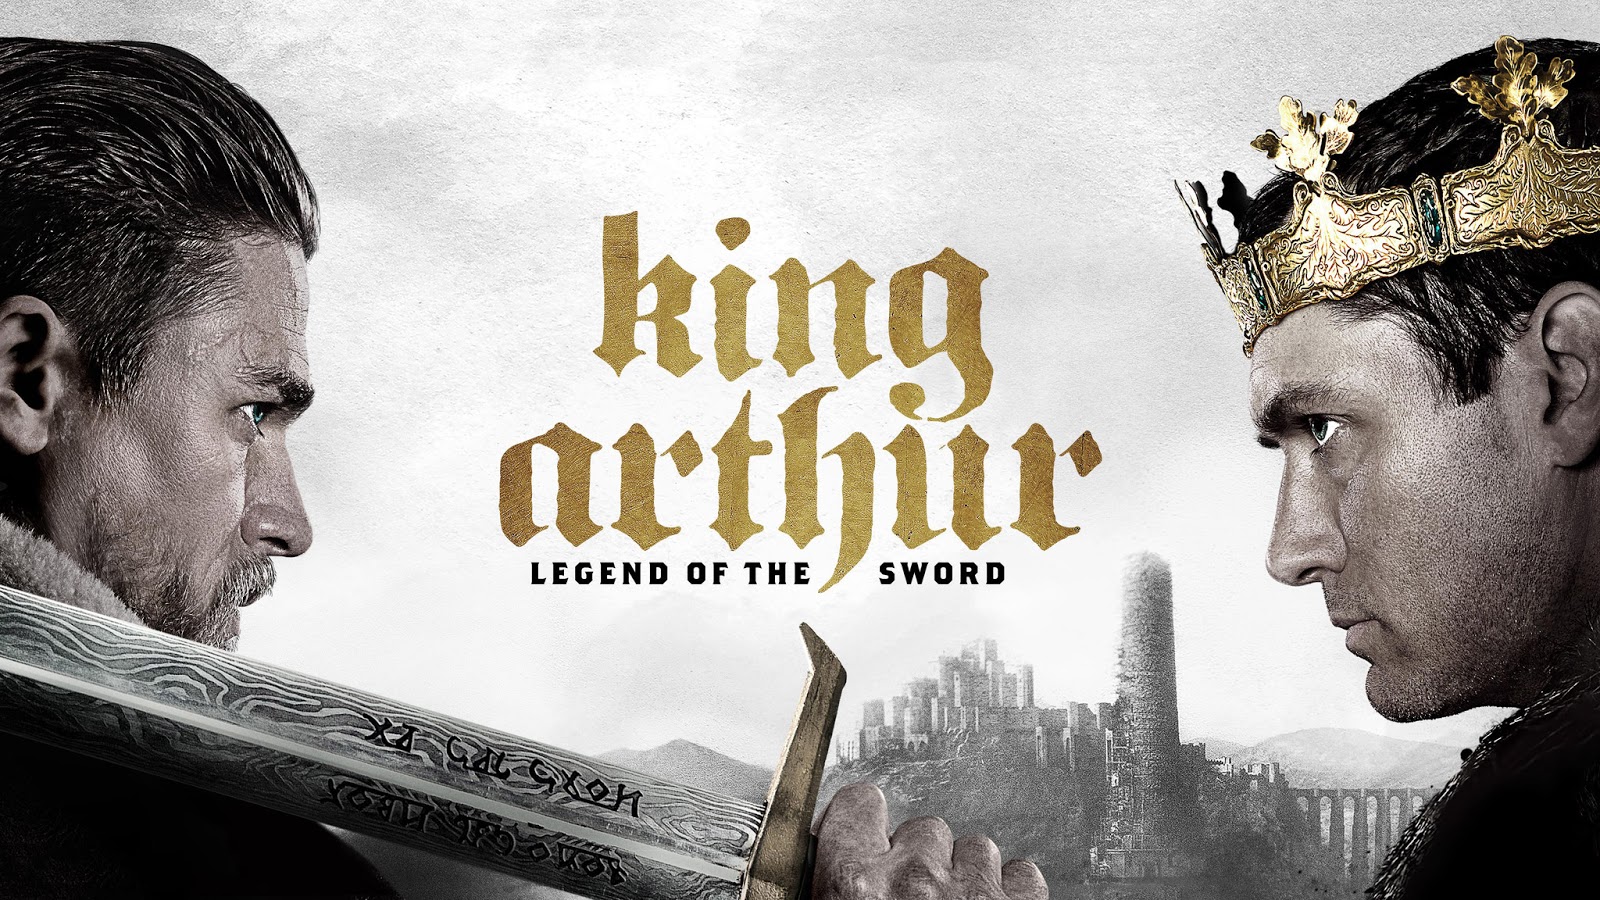 Le Roi Arthur - La legende d'Excalibur